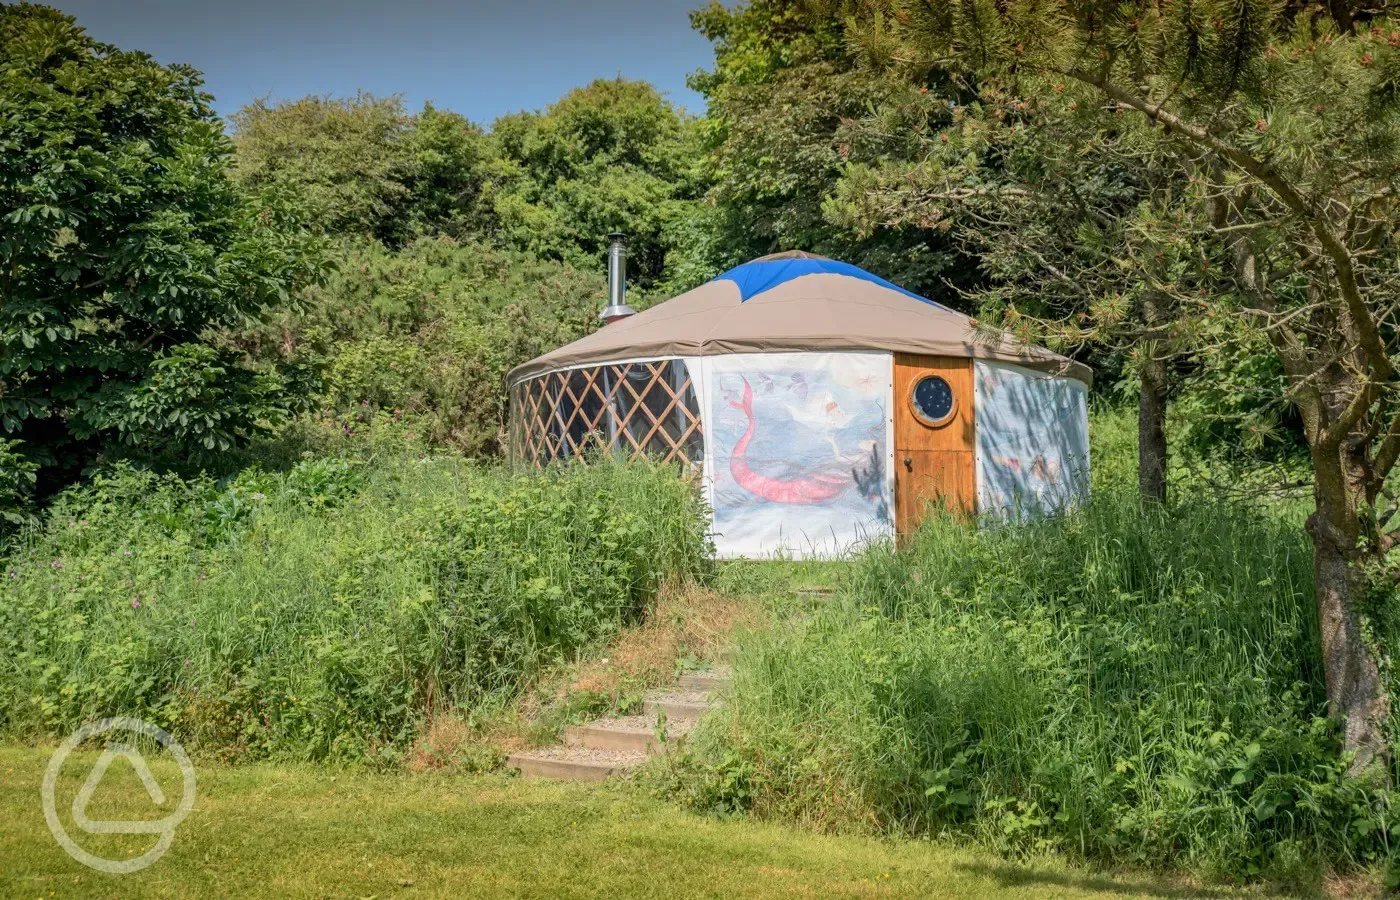 Starlight yurt